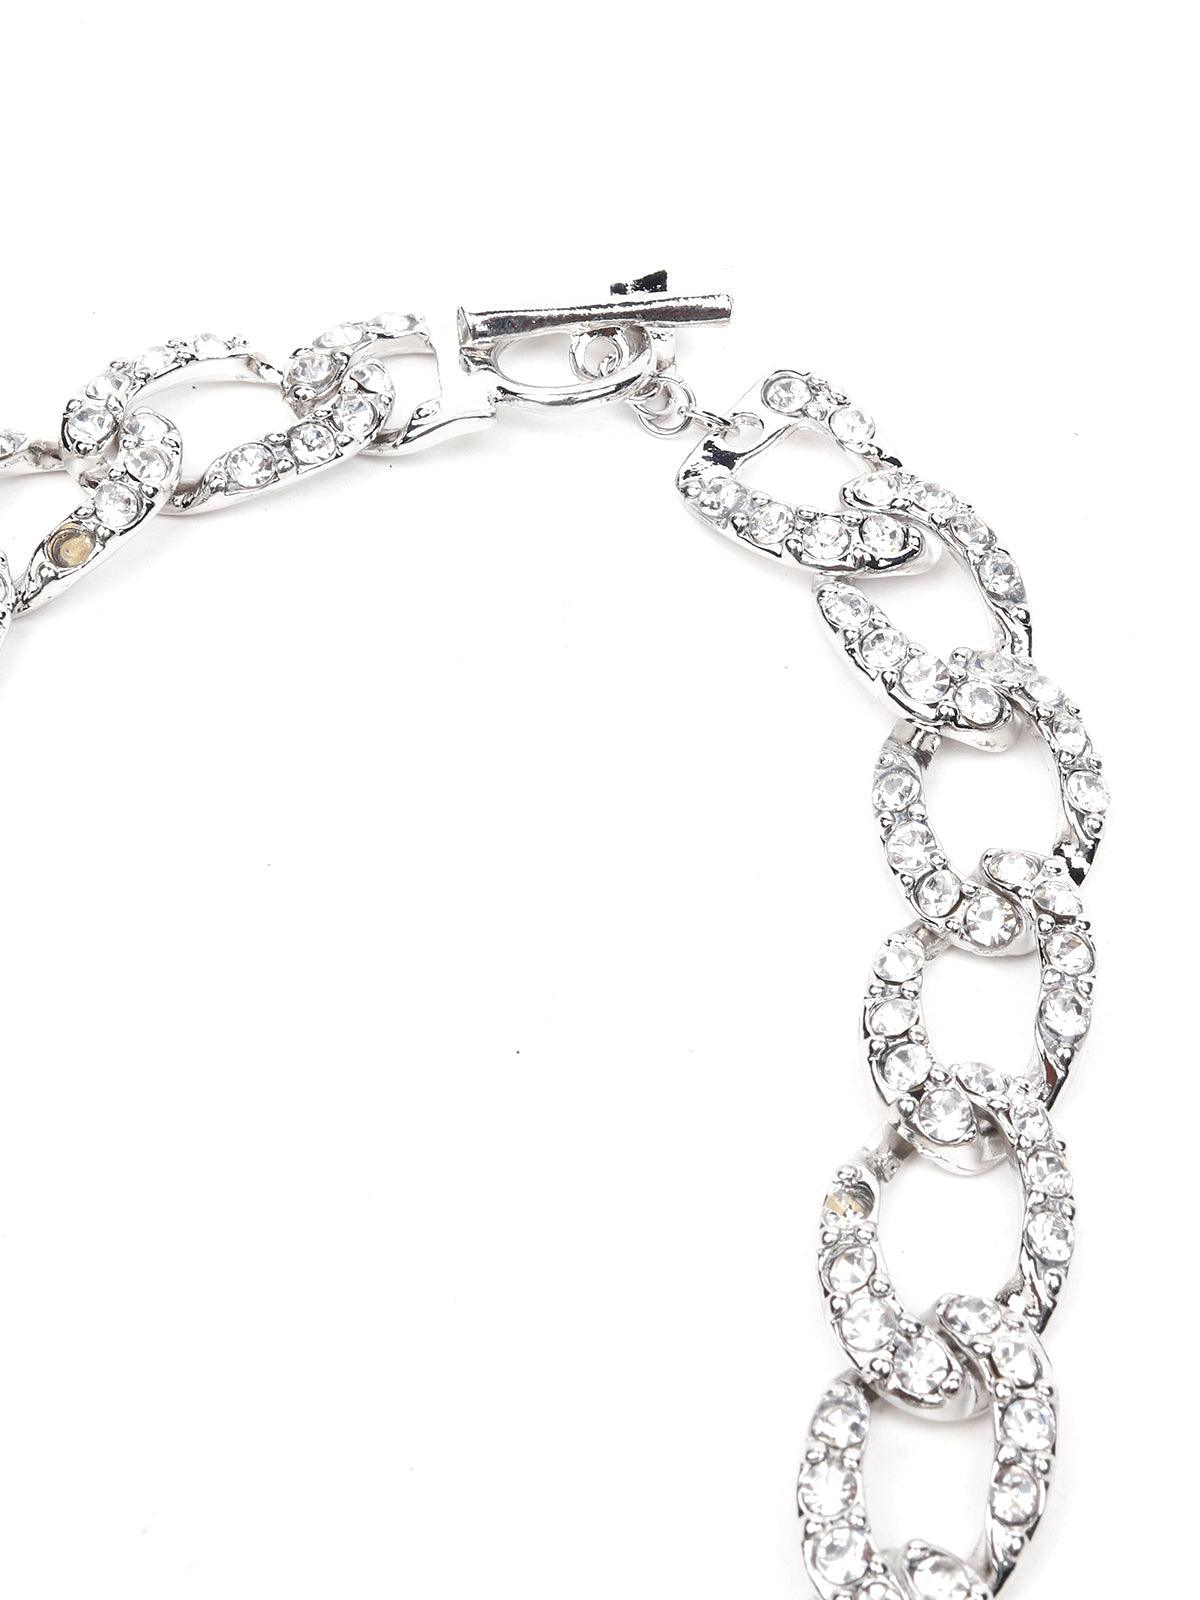 Crystal-embellished interlinked chain - Odette